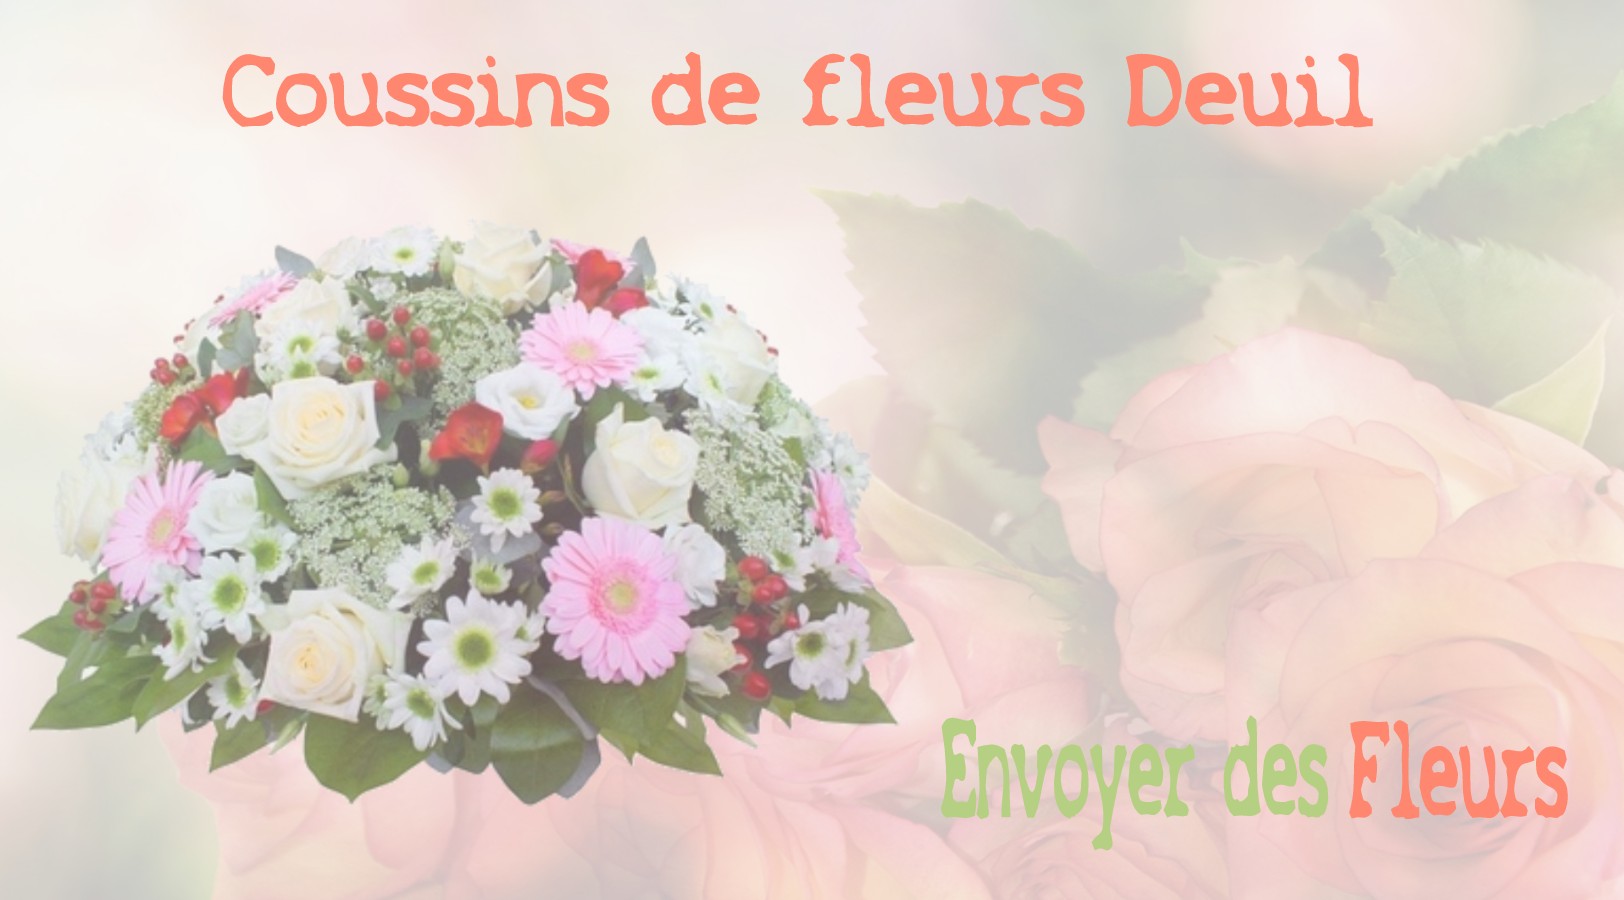 Les coussins de fleurs deuil - LIVRAISON FLEURS DEUIL A URY 77